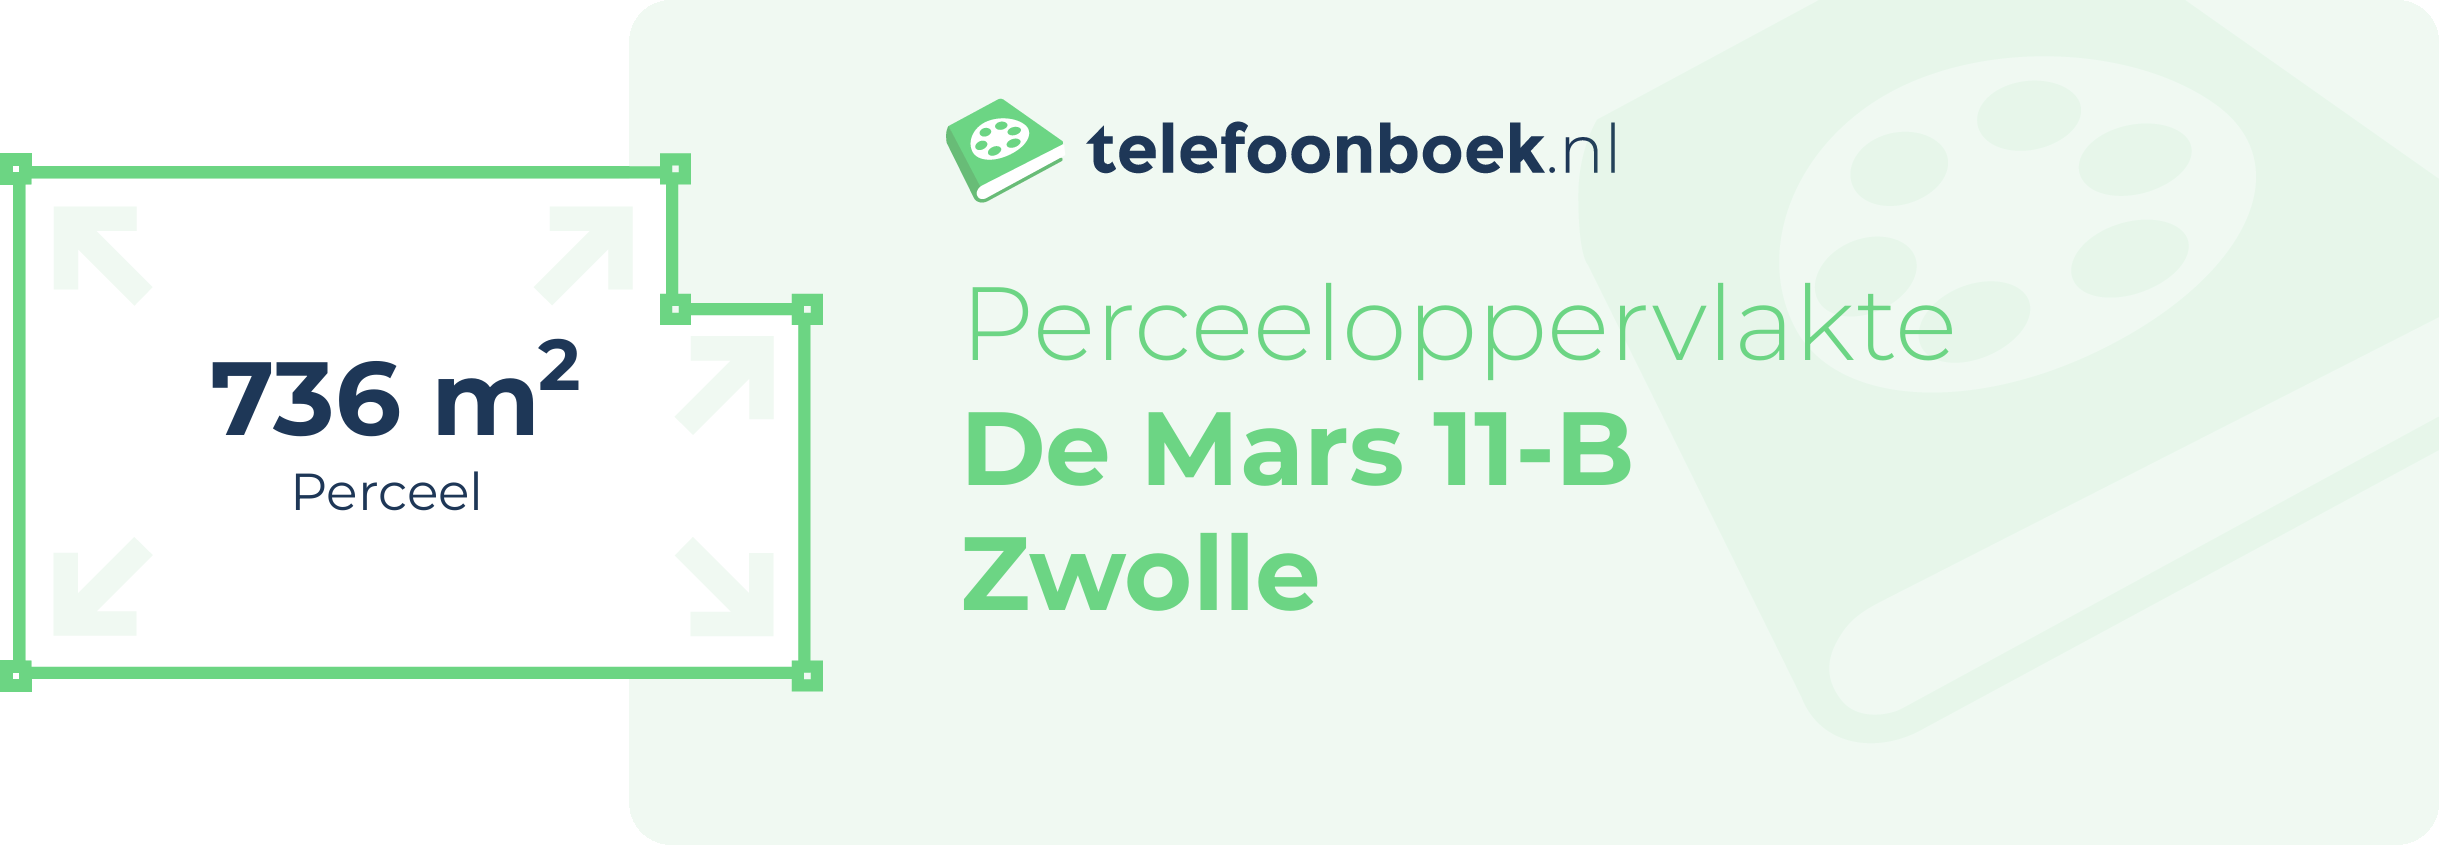 Perceeloppervlakte De Mars 11-B Zwolle